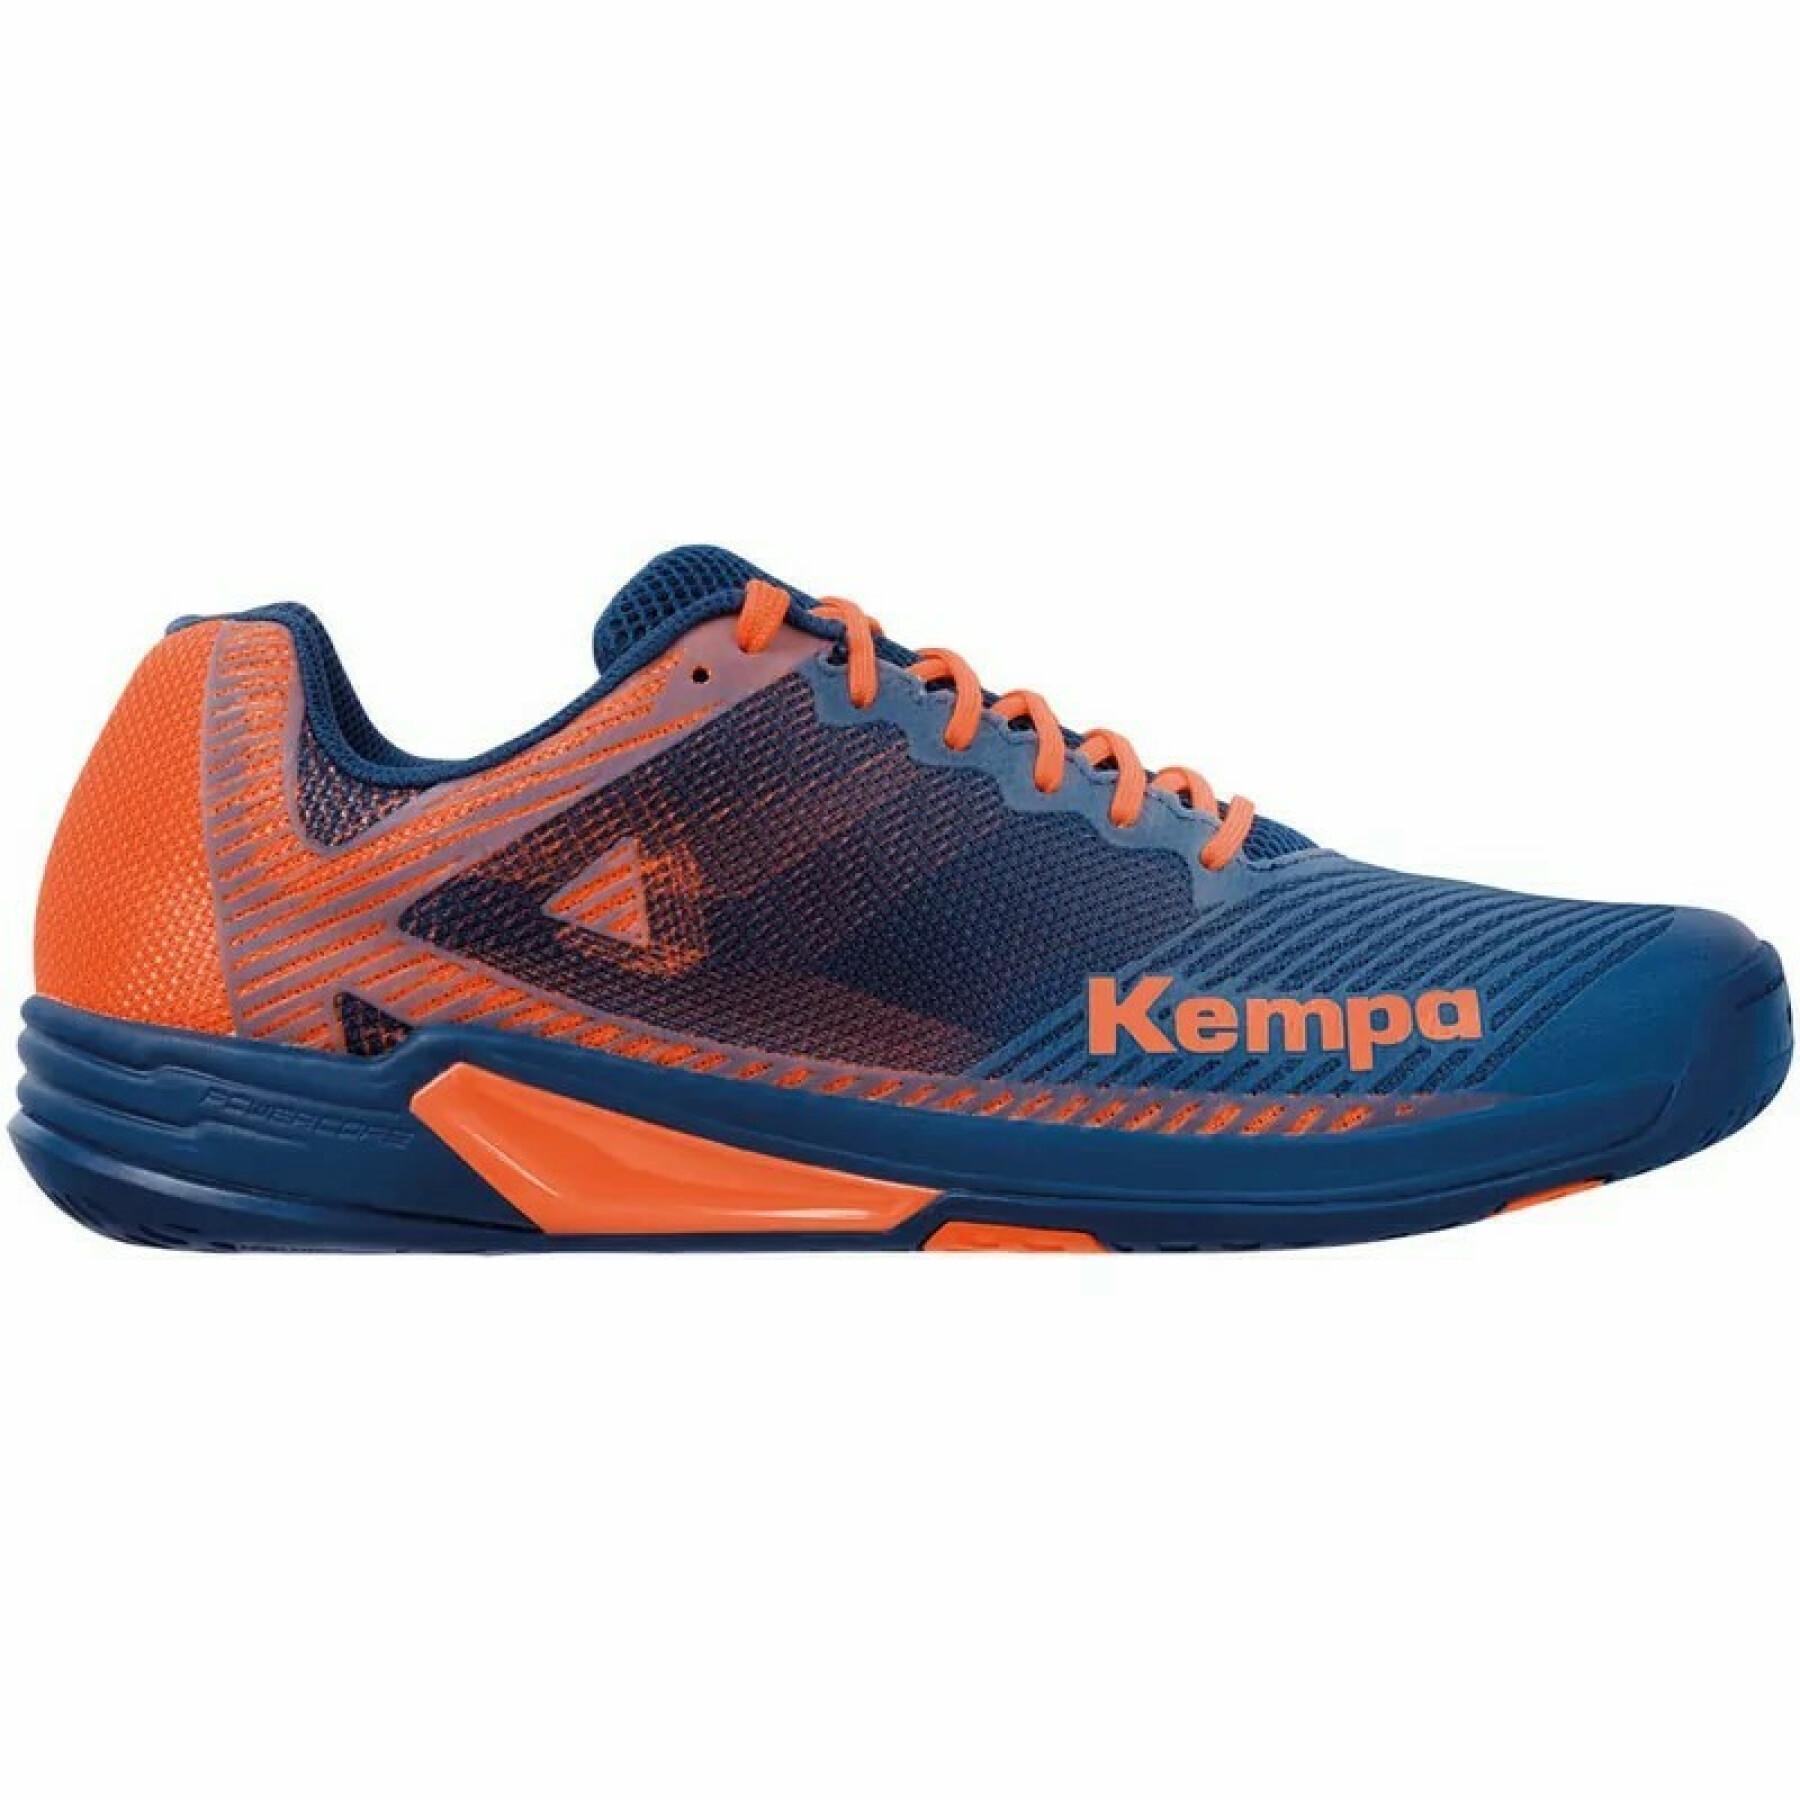 Schuhe Kempa Wing 2.0